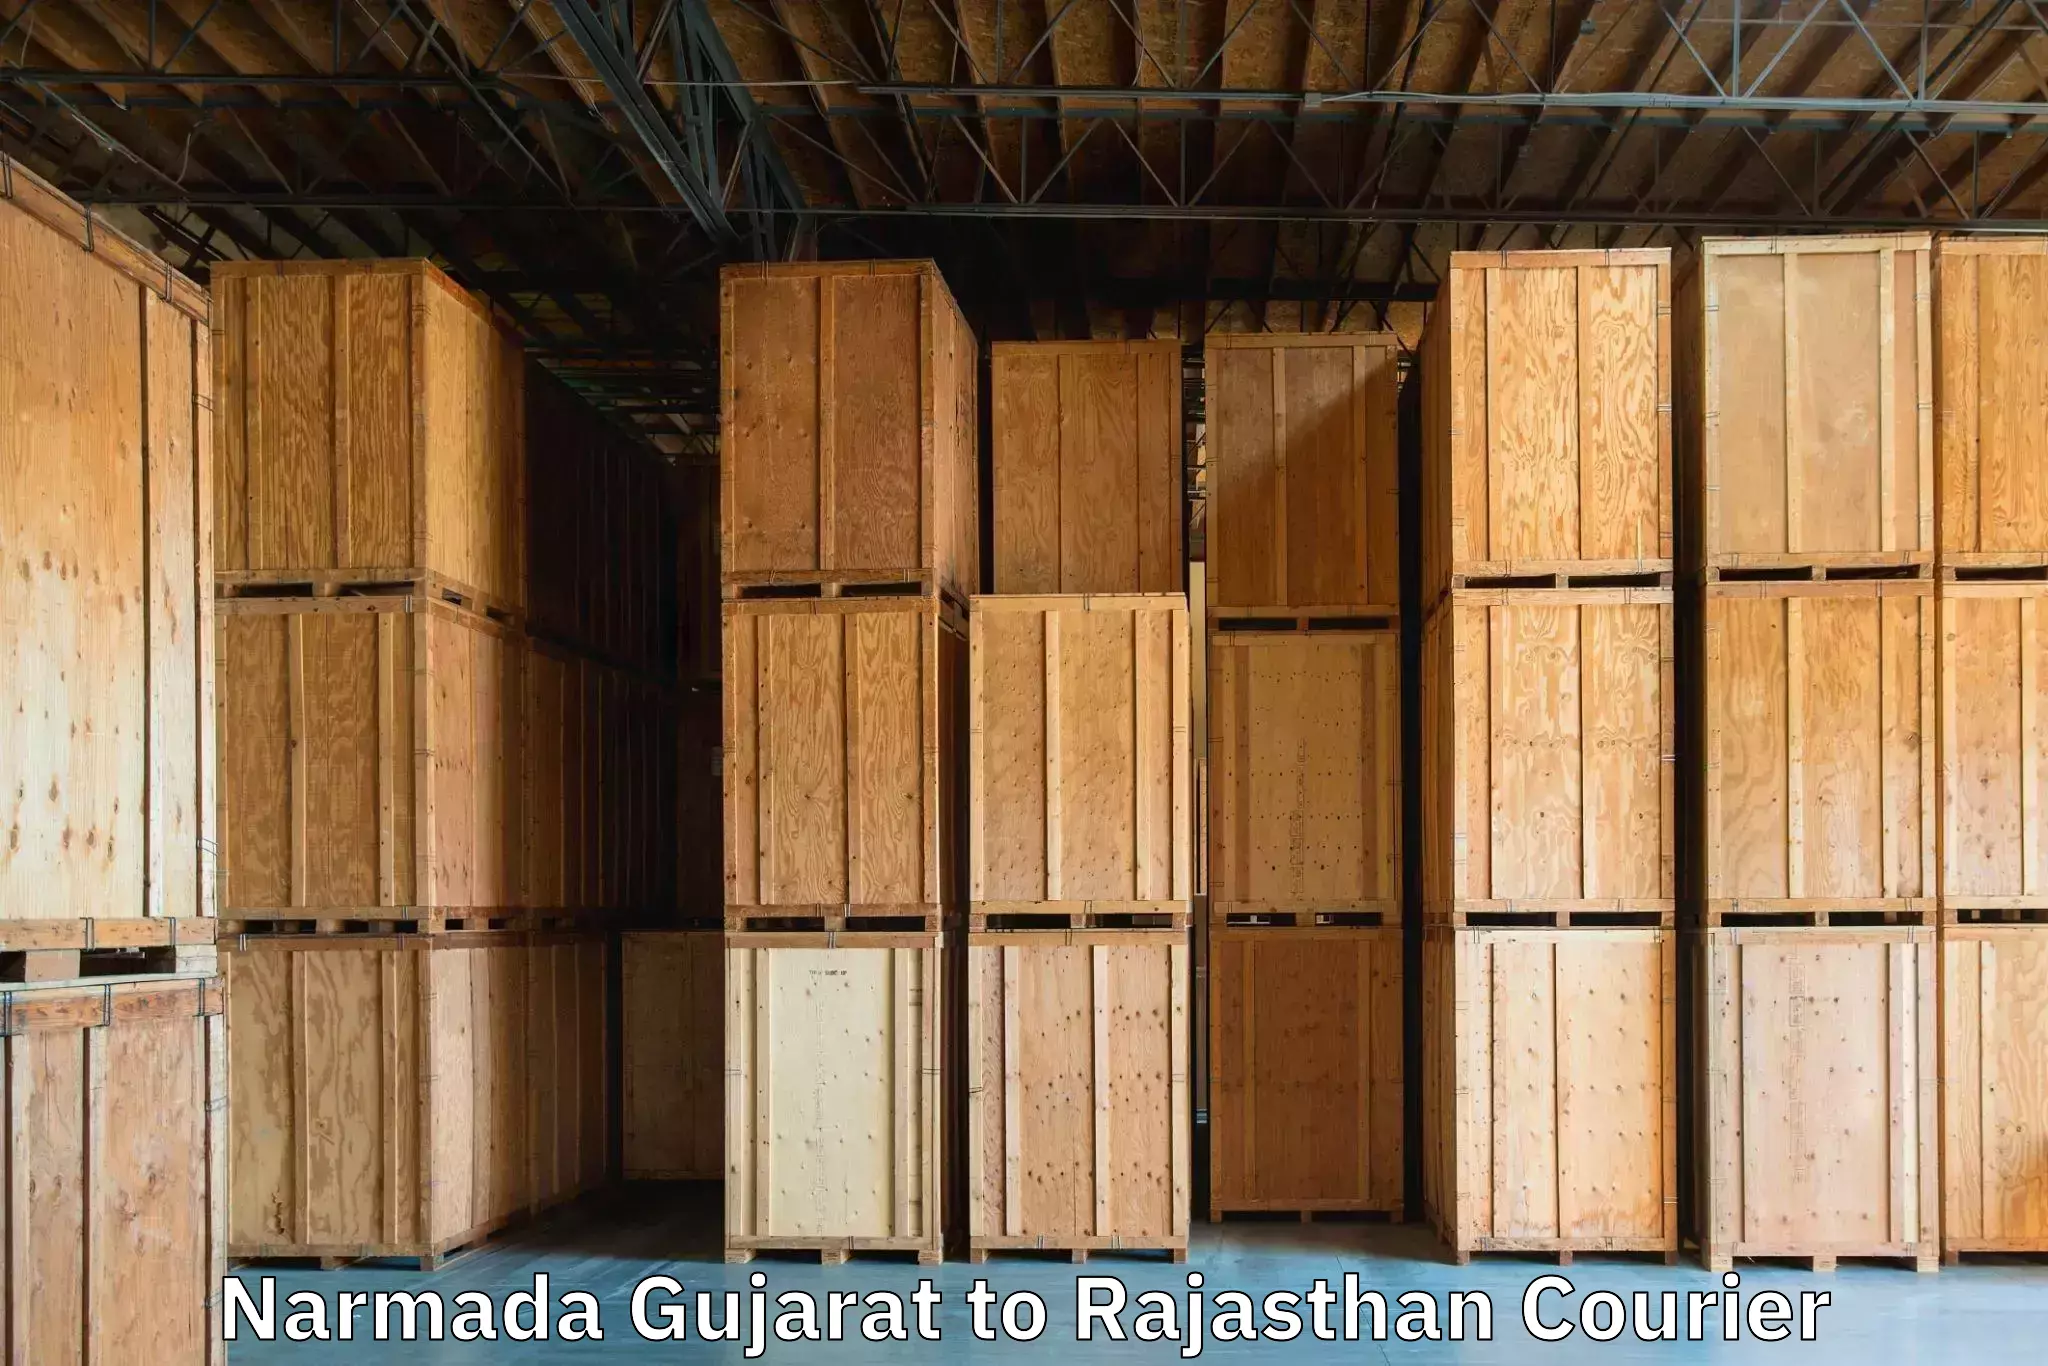 Baggage transport services Narmada Gujarat to Nainwa